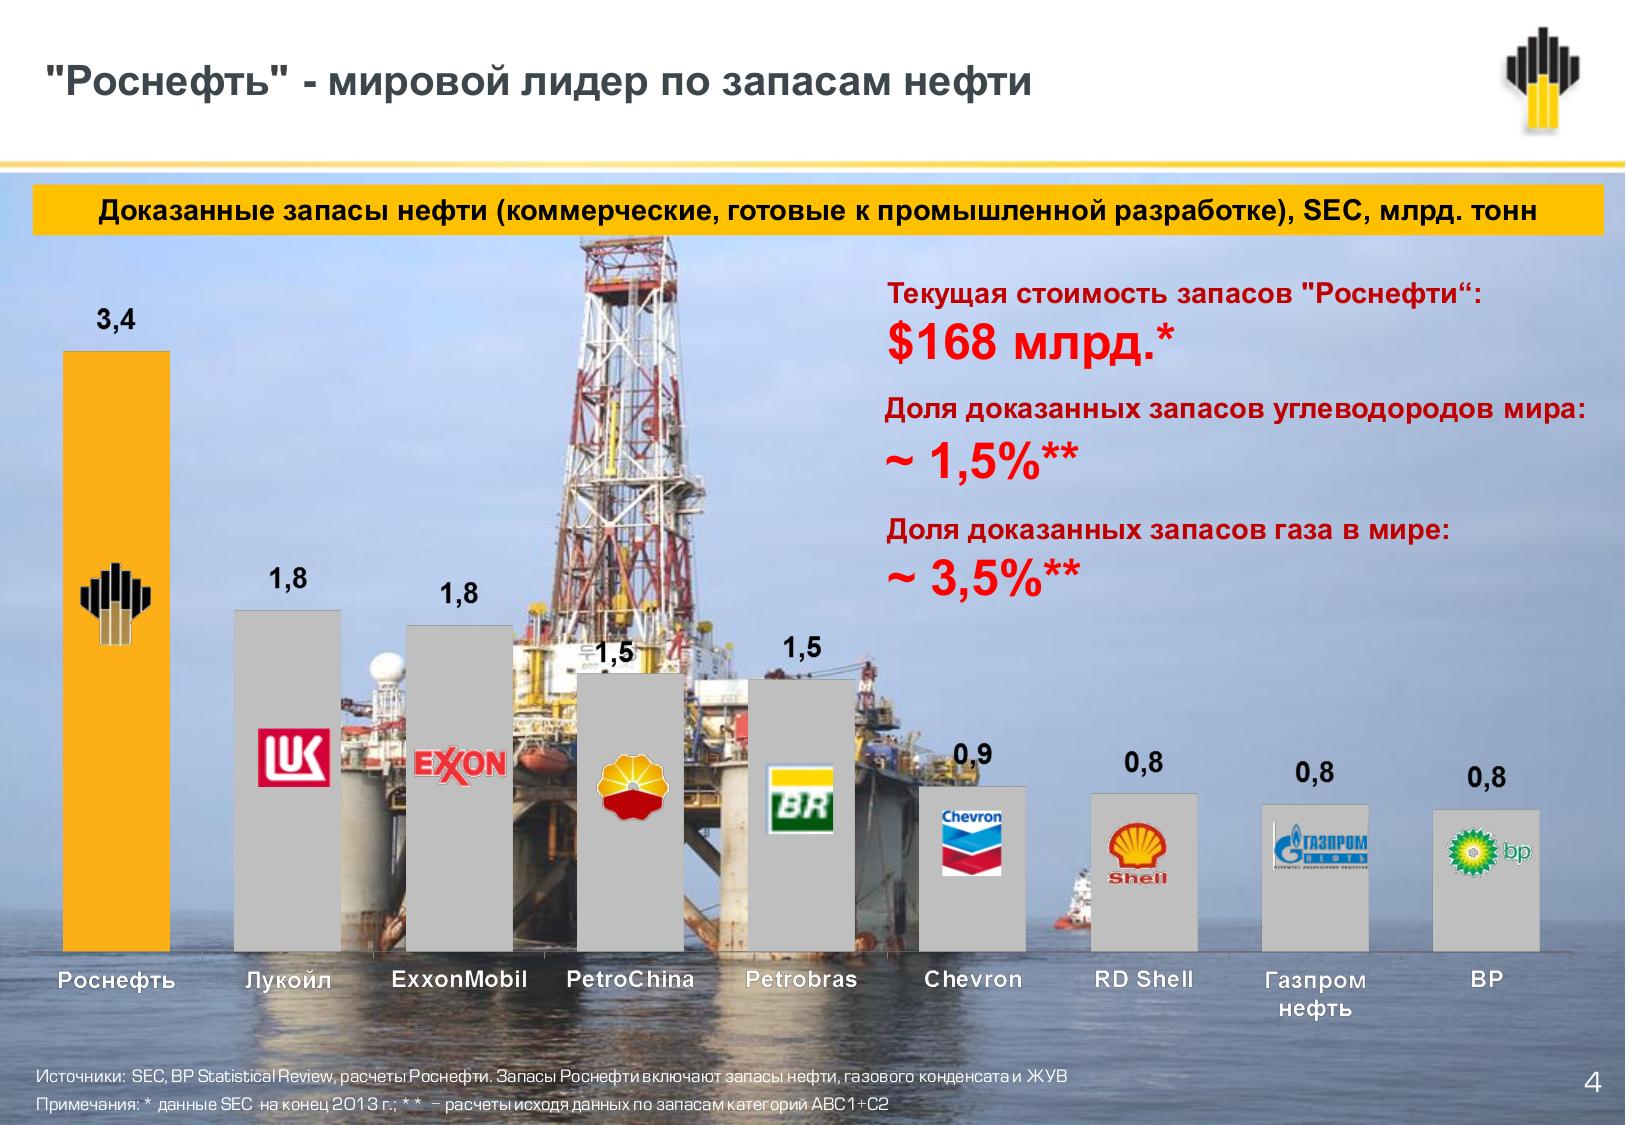 Показатели добычи нефти